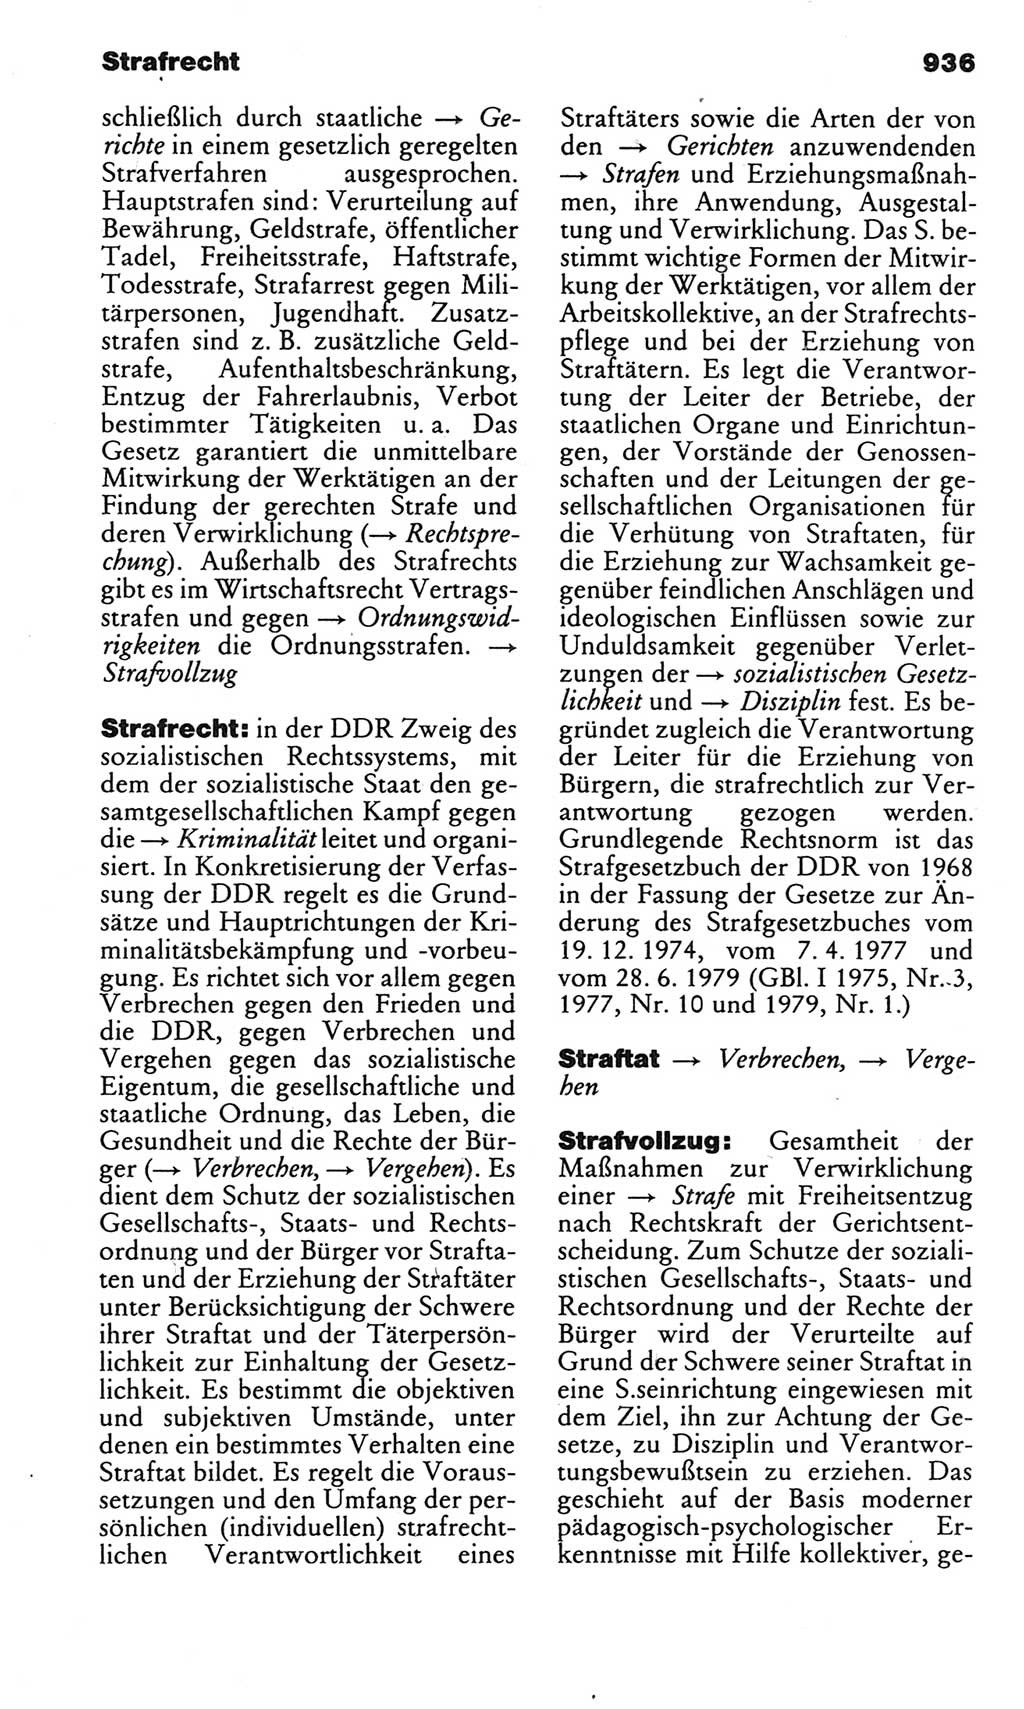 Kleines politisches Wörterbuch [Deutsche Demokratische Republik (DDR)] 1983, Seite 936 (Kl. pol. Wb. DDR 1983, S. 936)